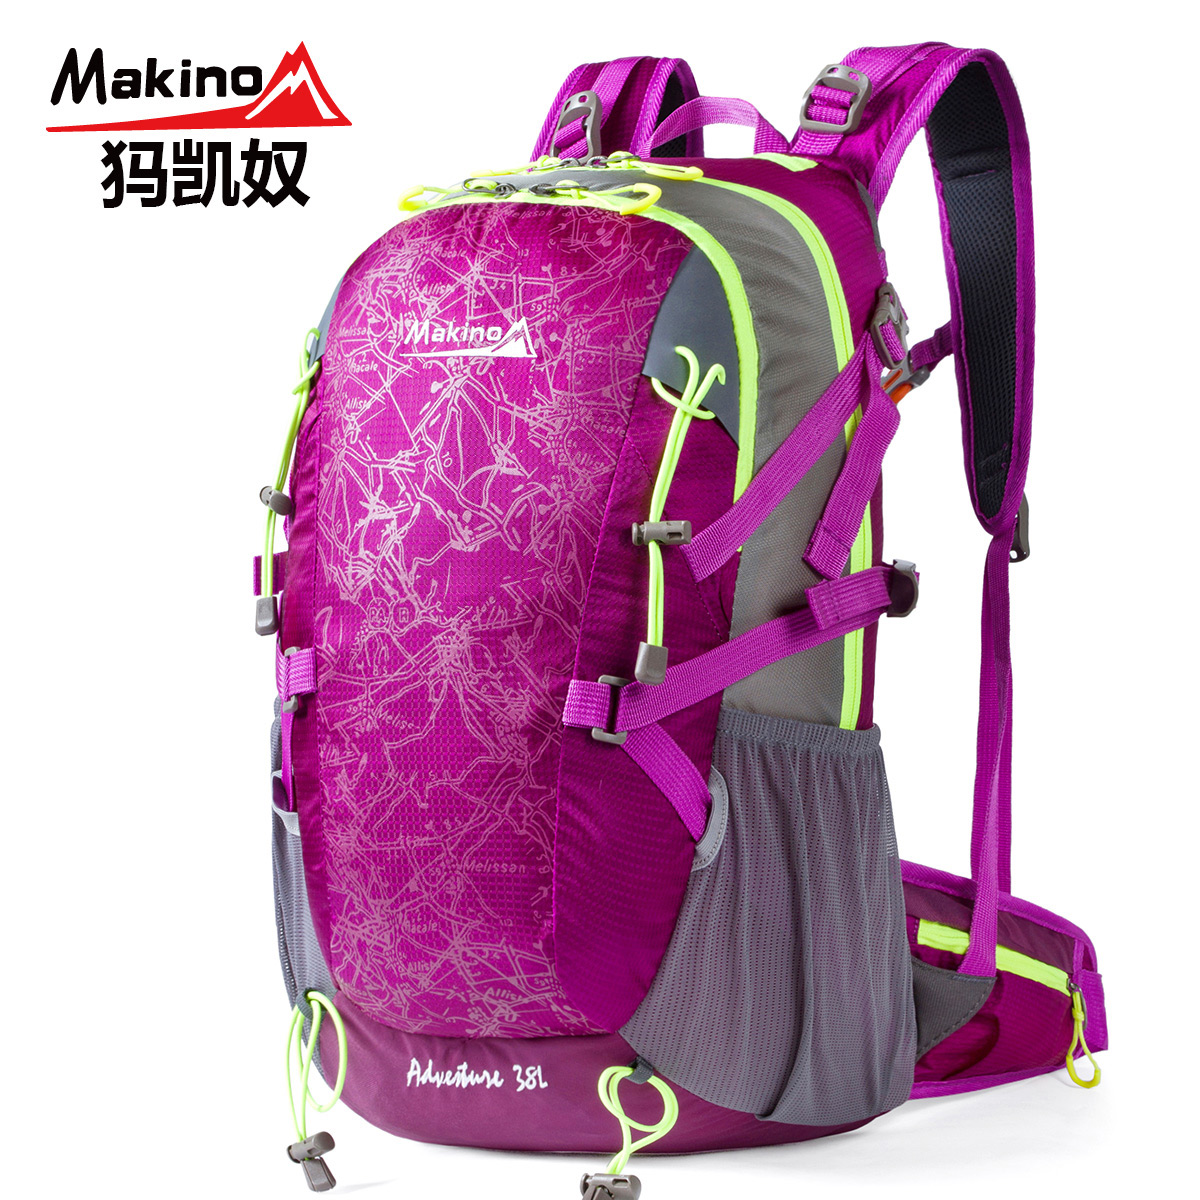 Makino/犸凯奴户外背包登山包男女双肩旅行包防水旅游电脑背包38L